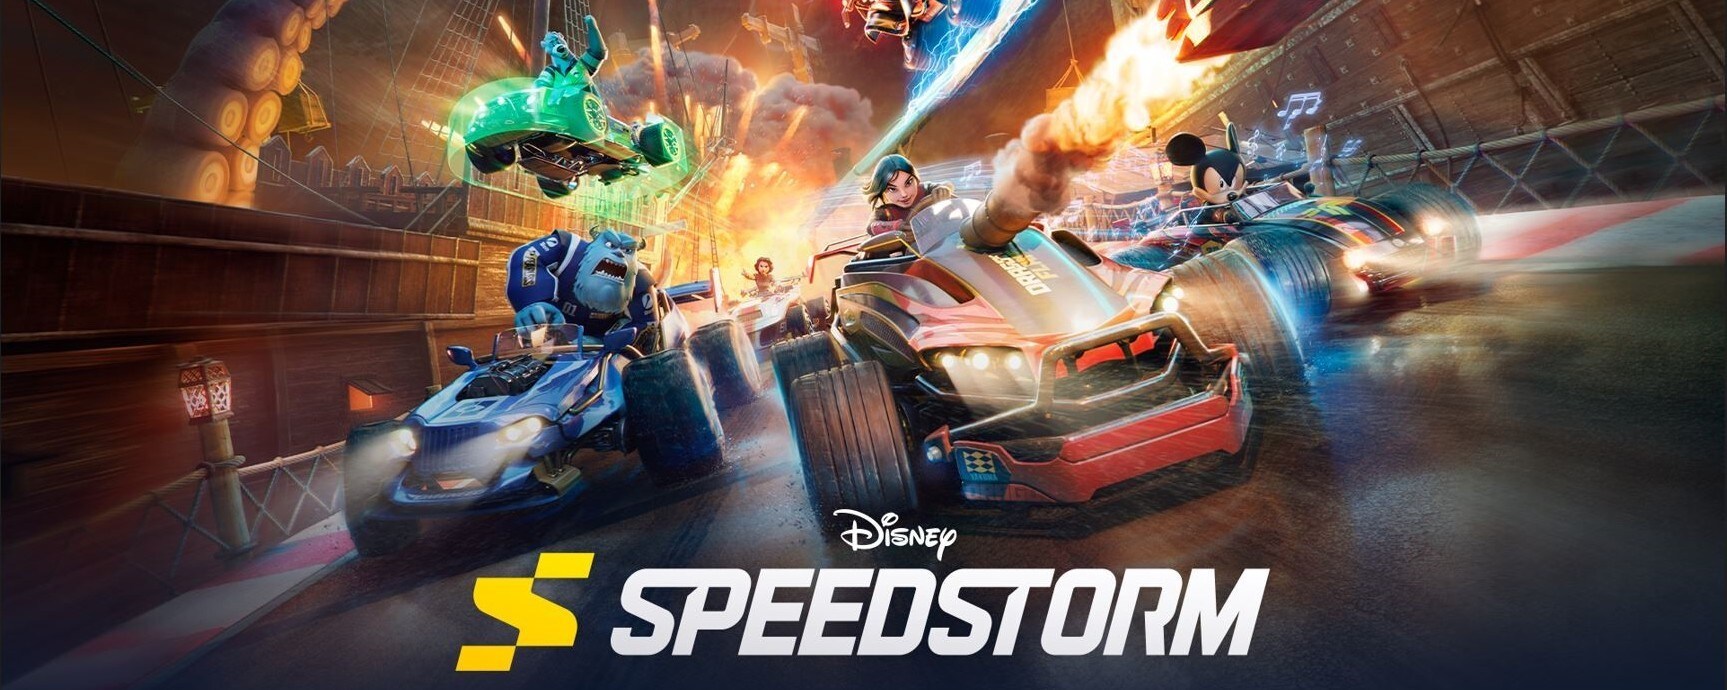 Disney Speedstorm: cómo desbloquear el juego en multijugador local